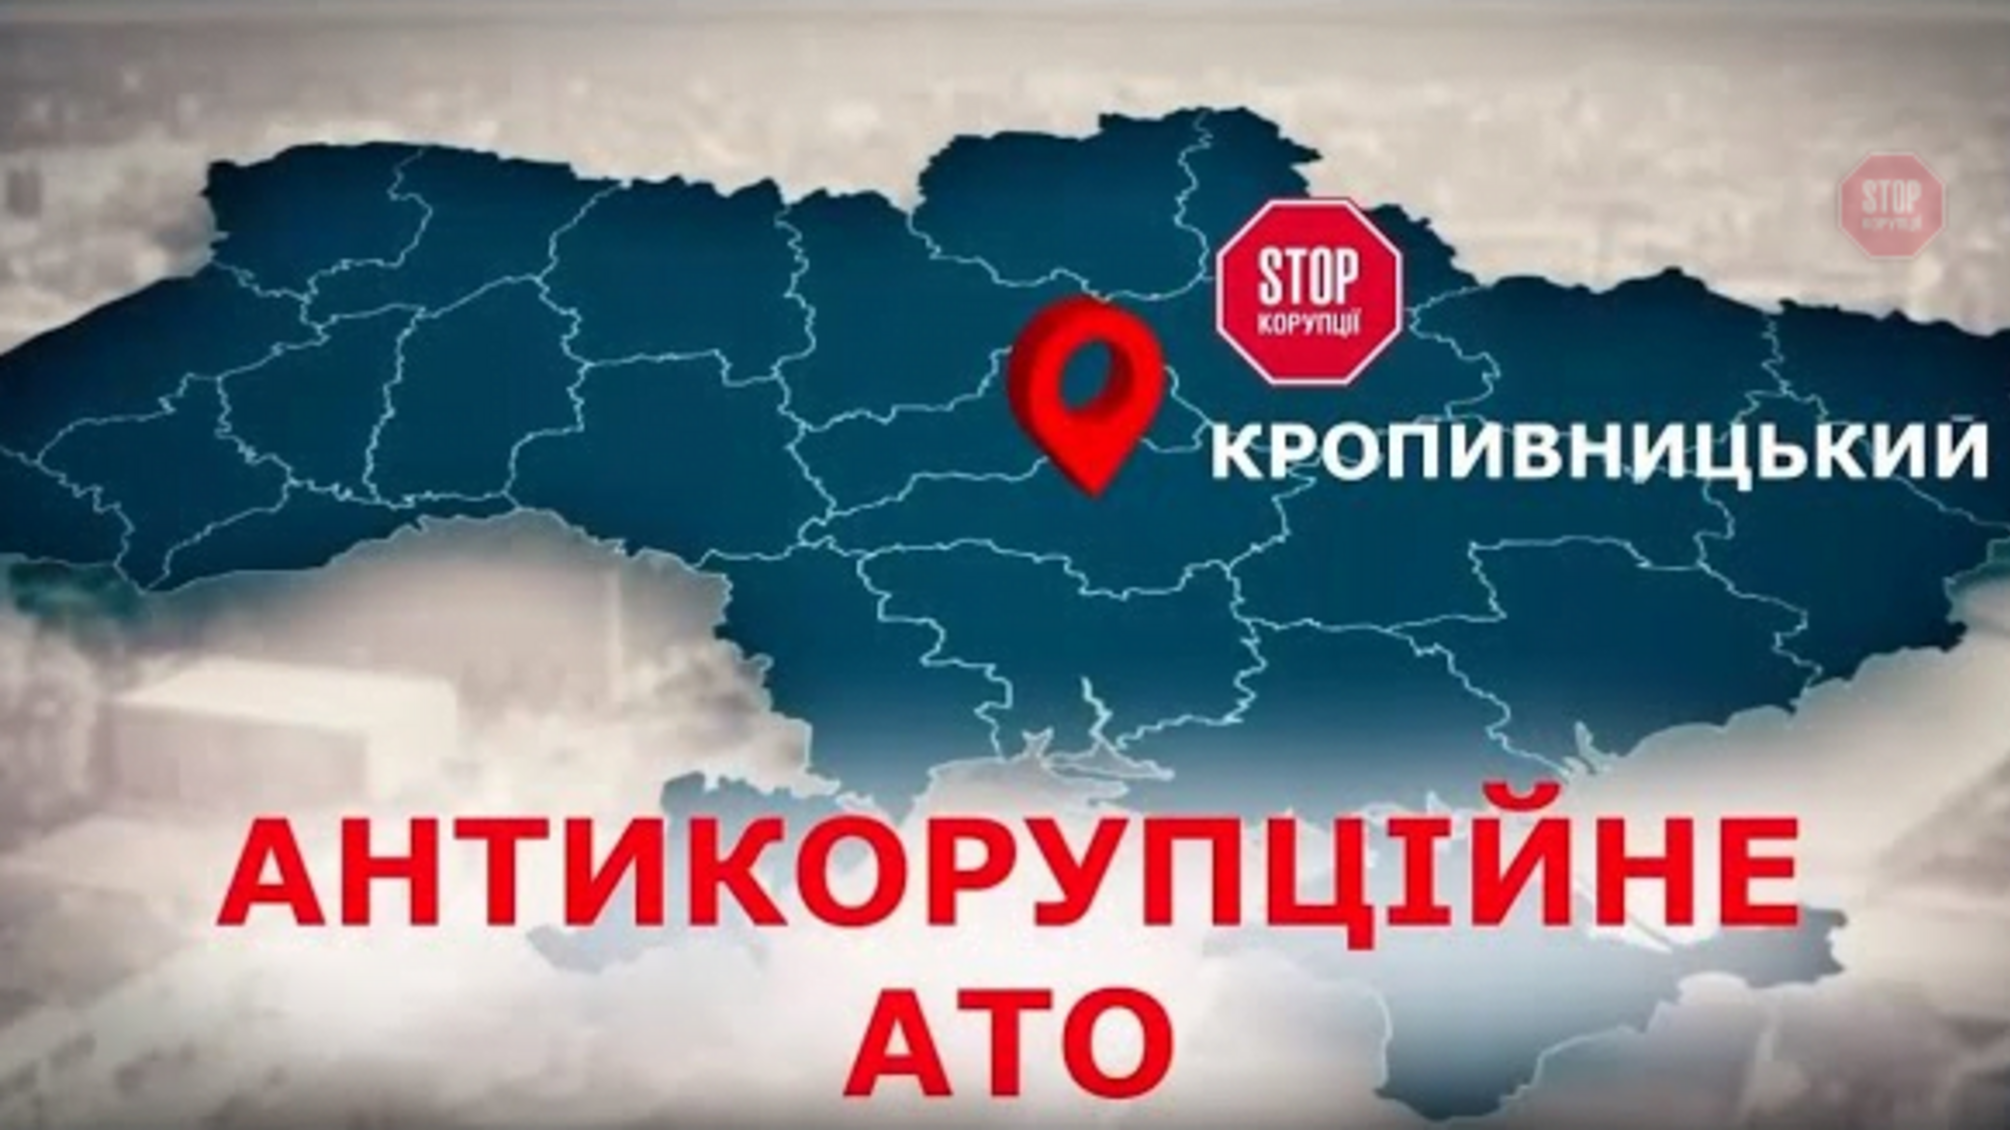 Антикорупційна АТО: активісти 'СтопКору' провели рейд у Кропивницькому